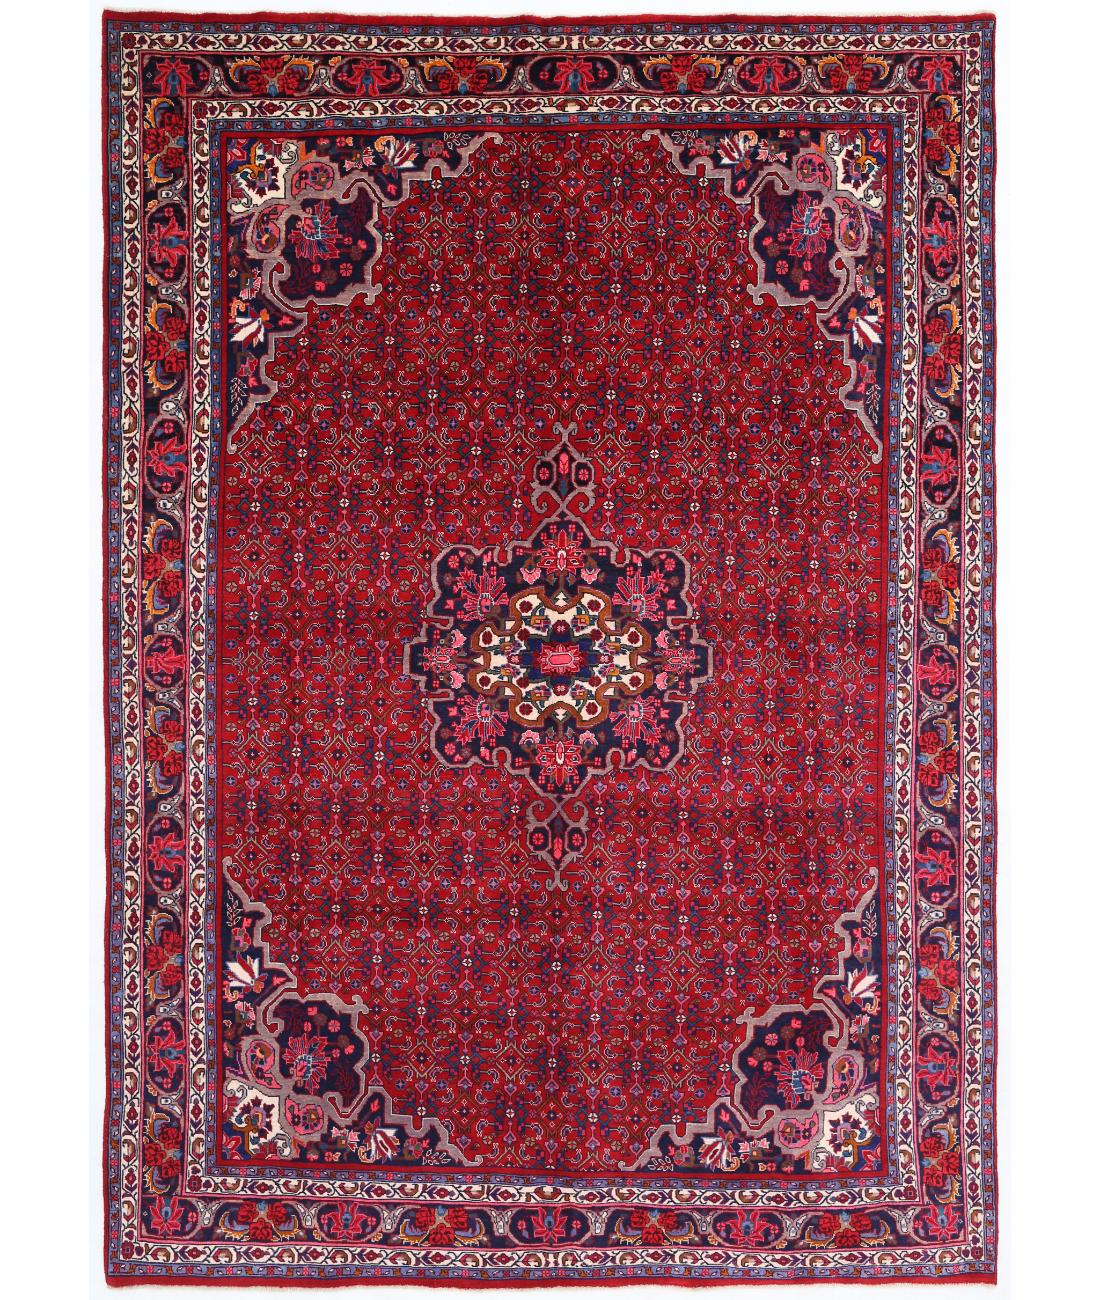 Hand Knotted Persian Bijar Wool Rug - 6'11'' x 10'1'' 6' 11" X 10' 1" ( 211 X 307 ) / Red / Blue